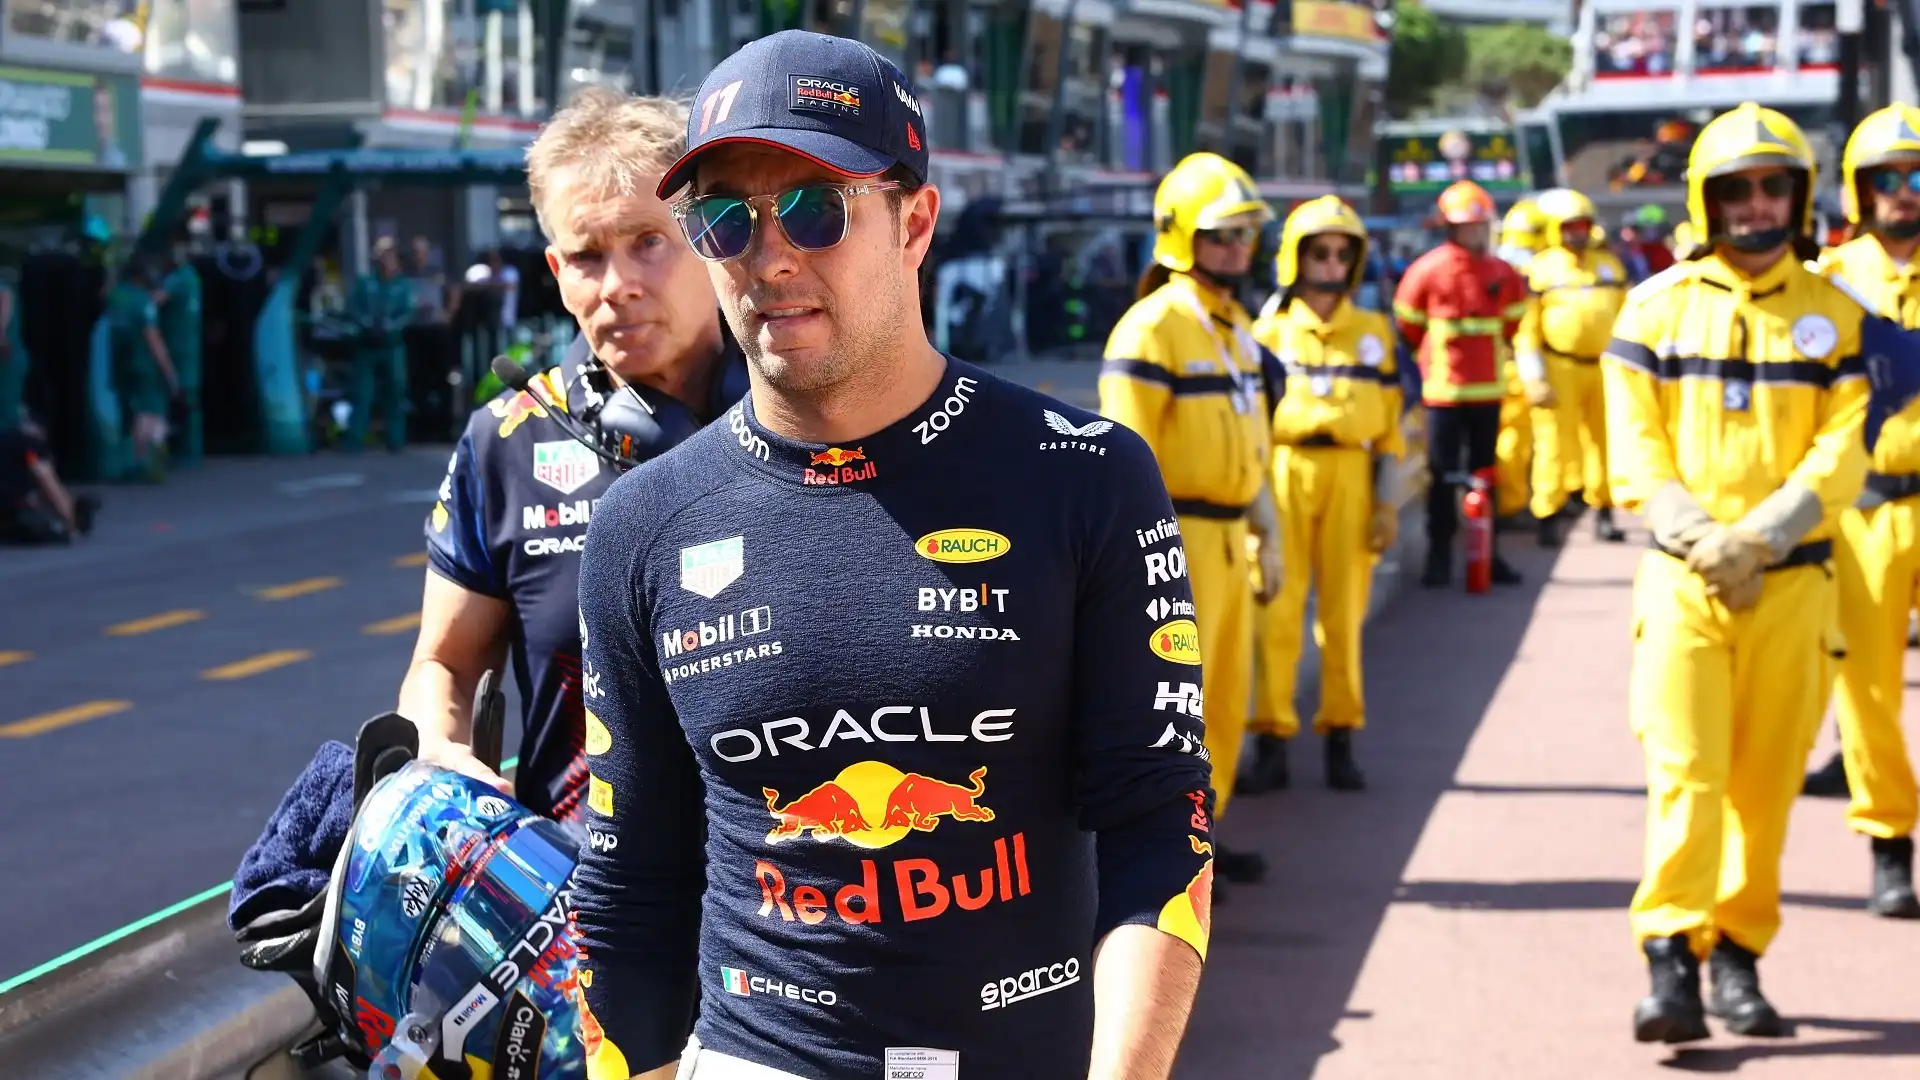 Gli ultimi errori del pilota messicano, umiliato da Verstappen in classifica, sembrano aver definitivamente escluso un futuro alla Red Bull